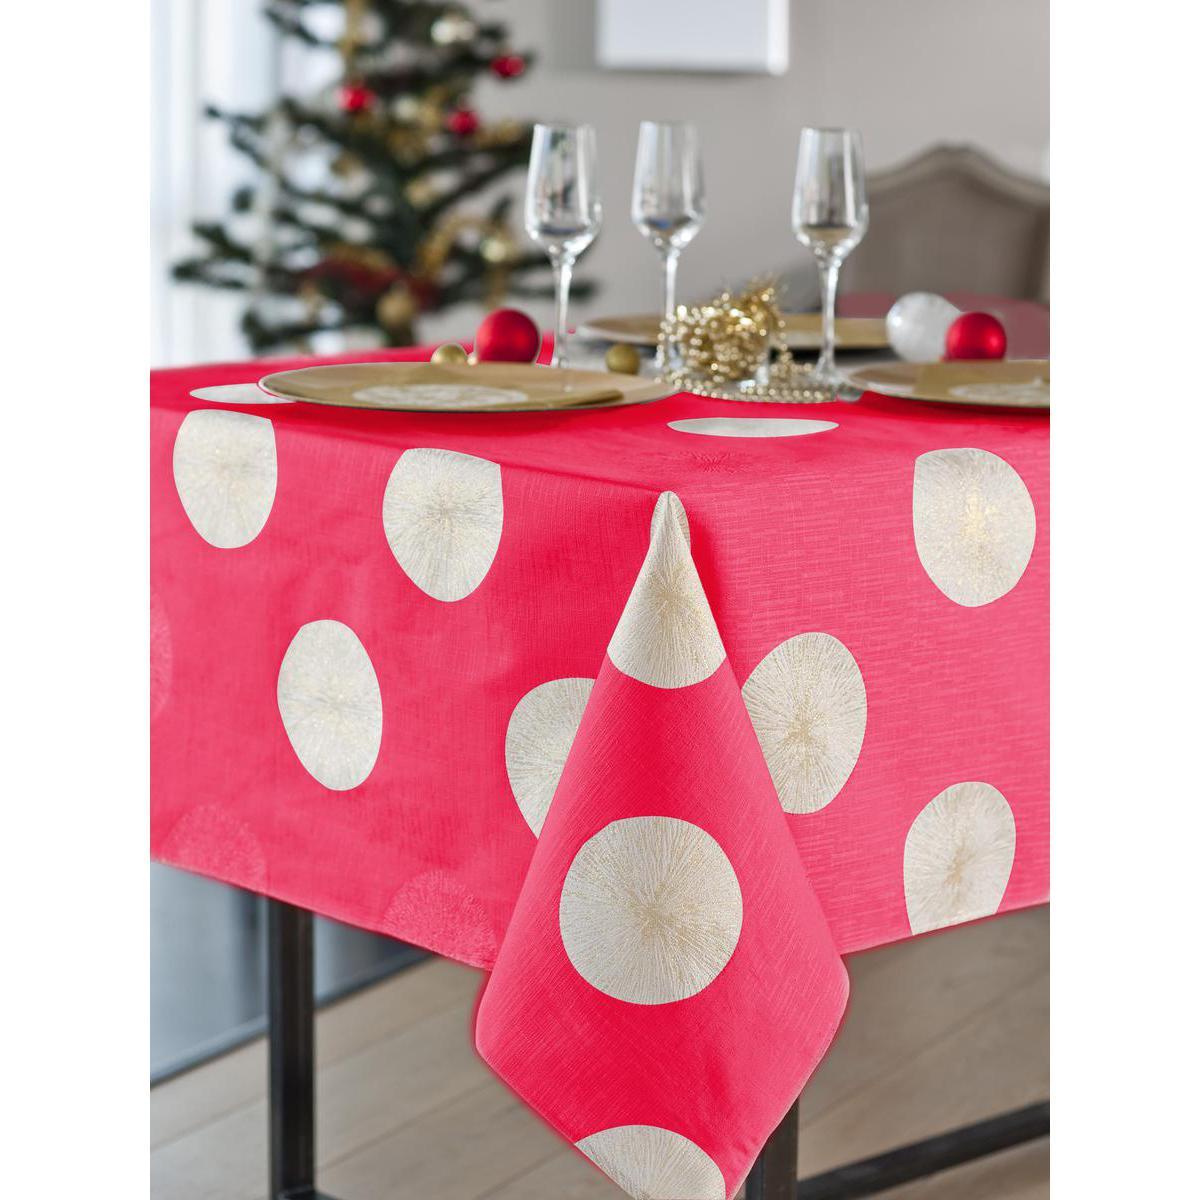 Nappe motifs ronds - Polyester et lurex - 150 x 250 cm - Rouge et blanc